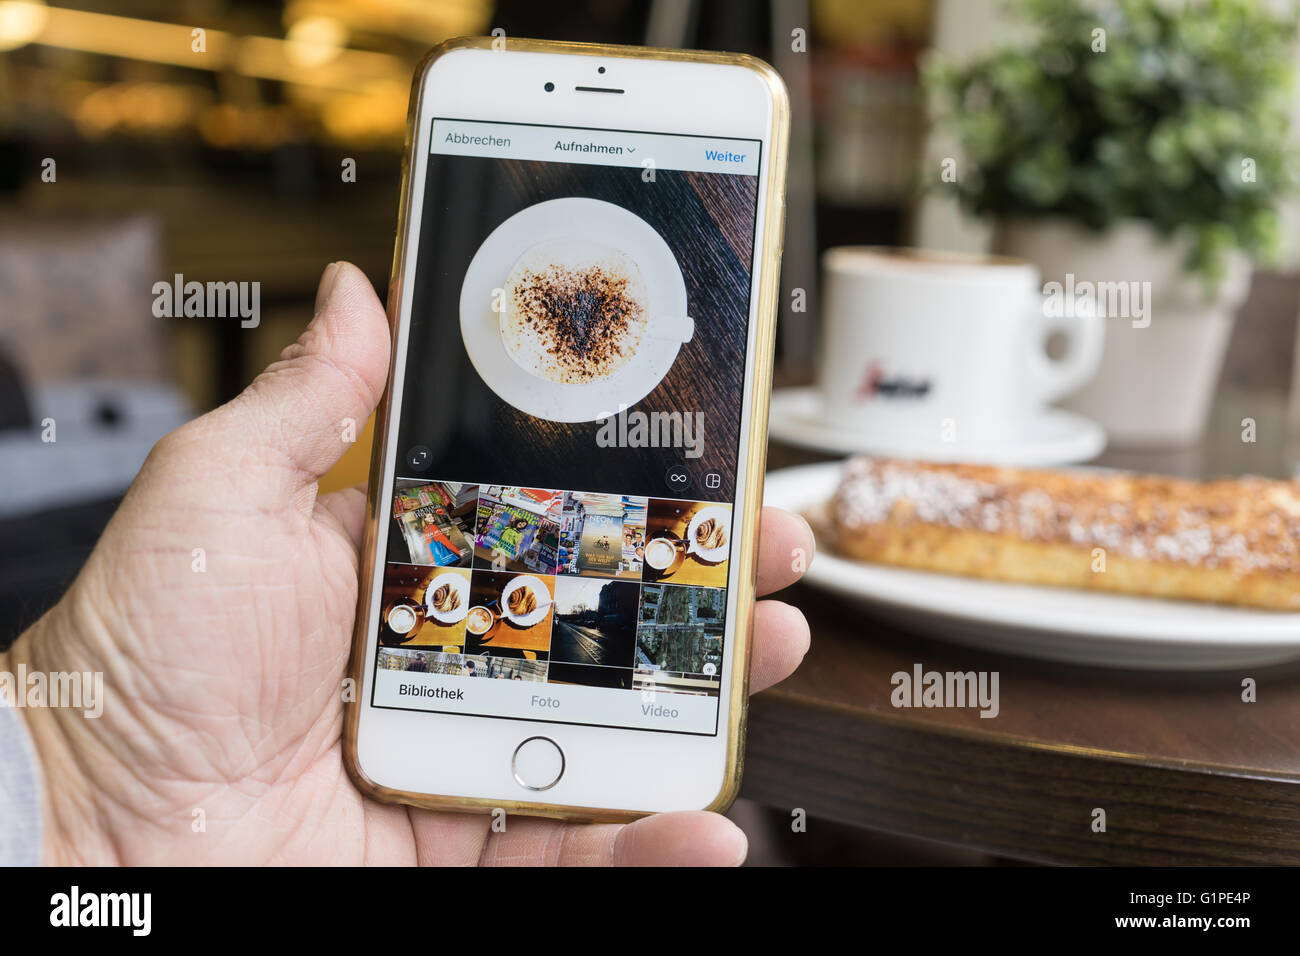 Berlín, Alemania - 17 de mayo, 2016: hombre utilizando la plataforma Instagram rediseñado en un iPhone blanco 6 Plus. Foto de stock